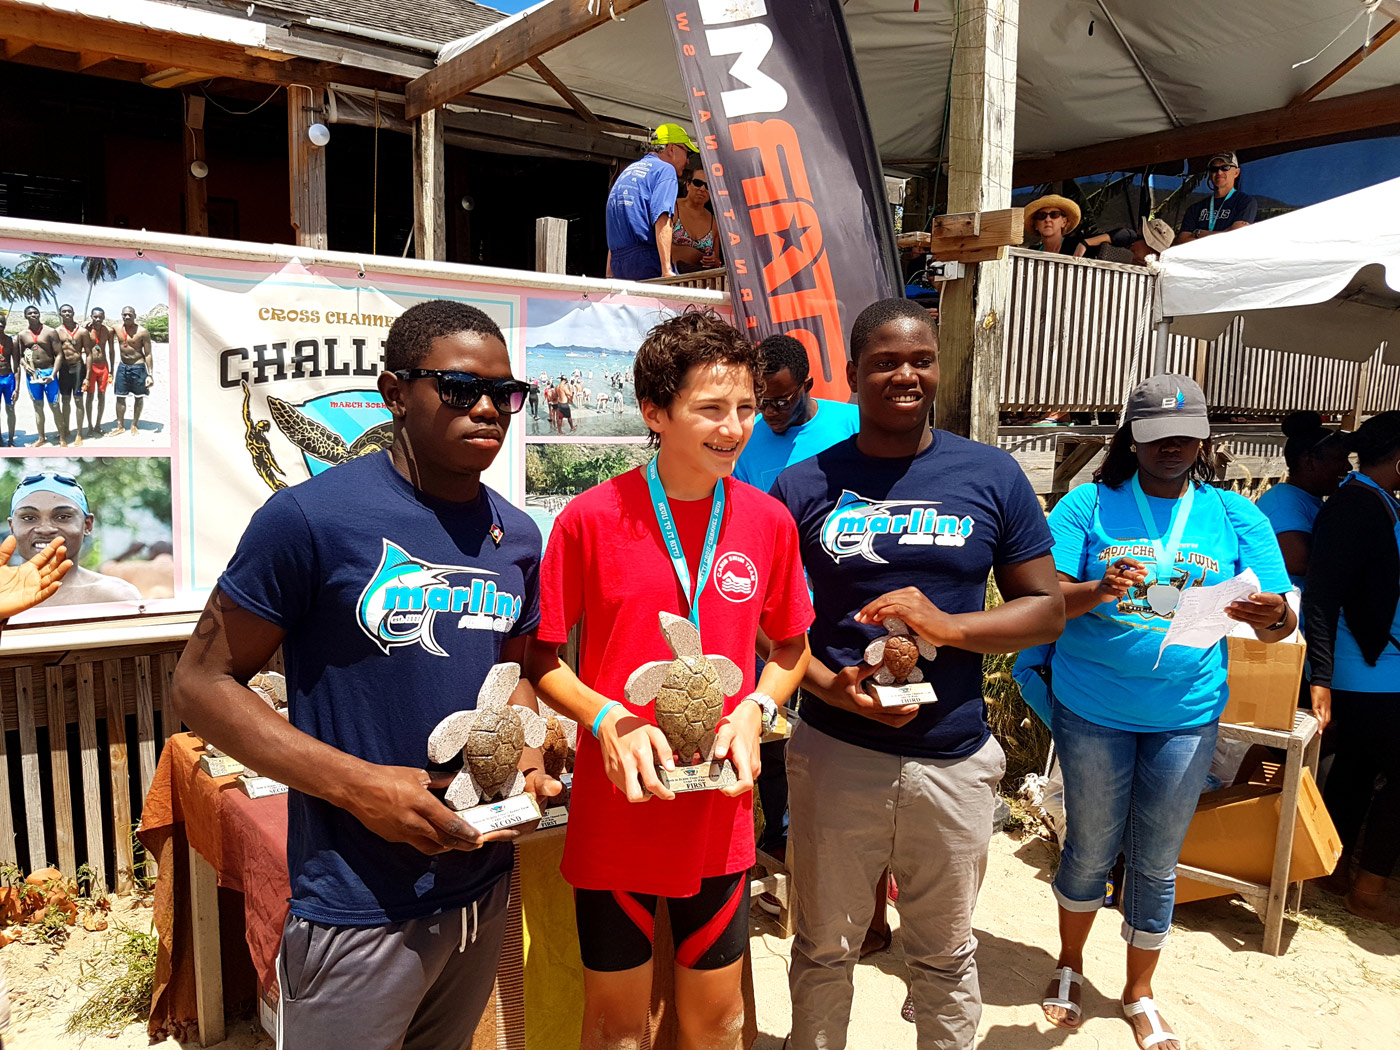 Nevis to St Kitts Cross Channel Winners